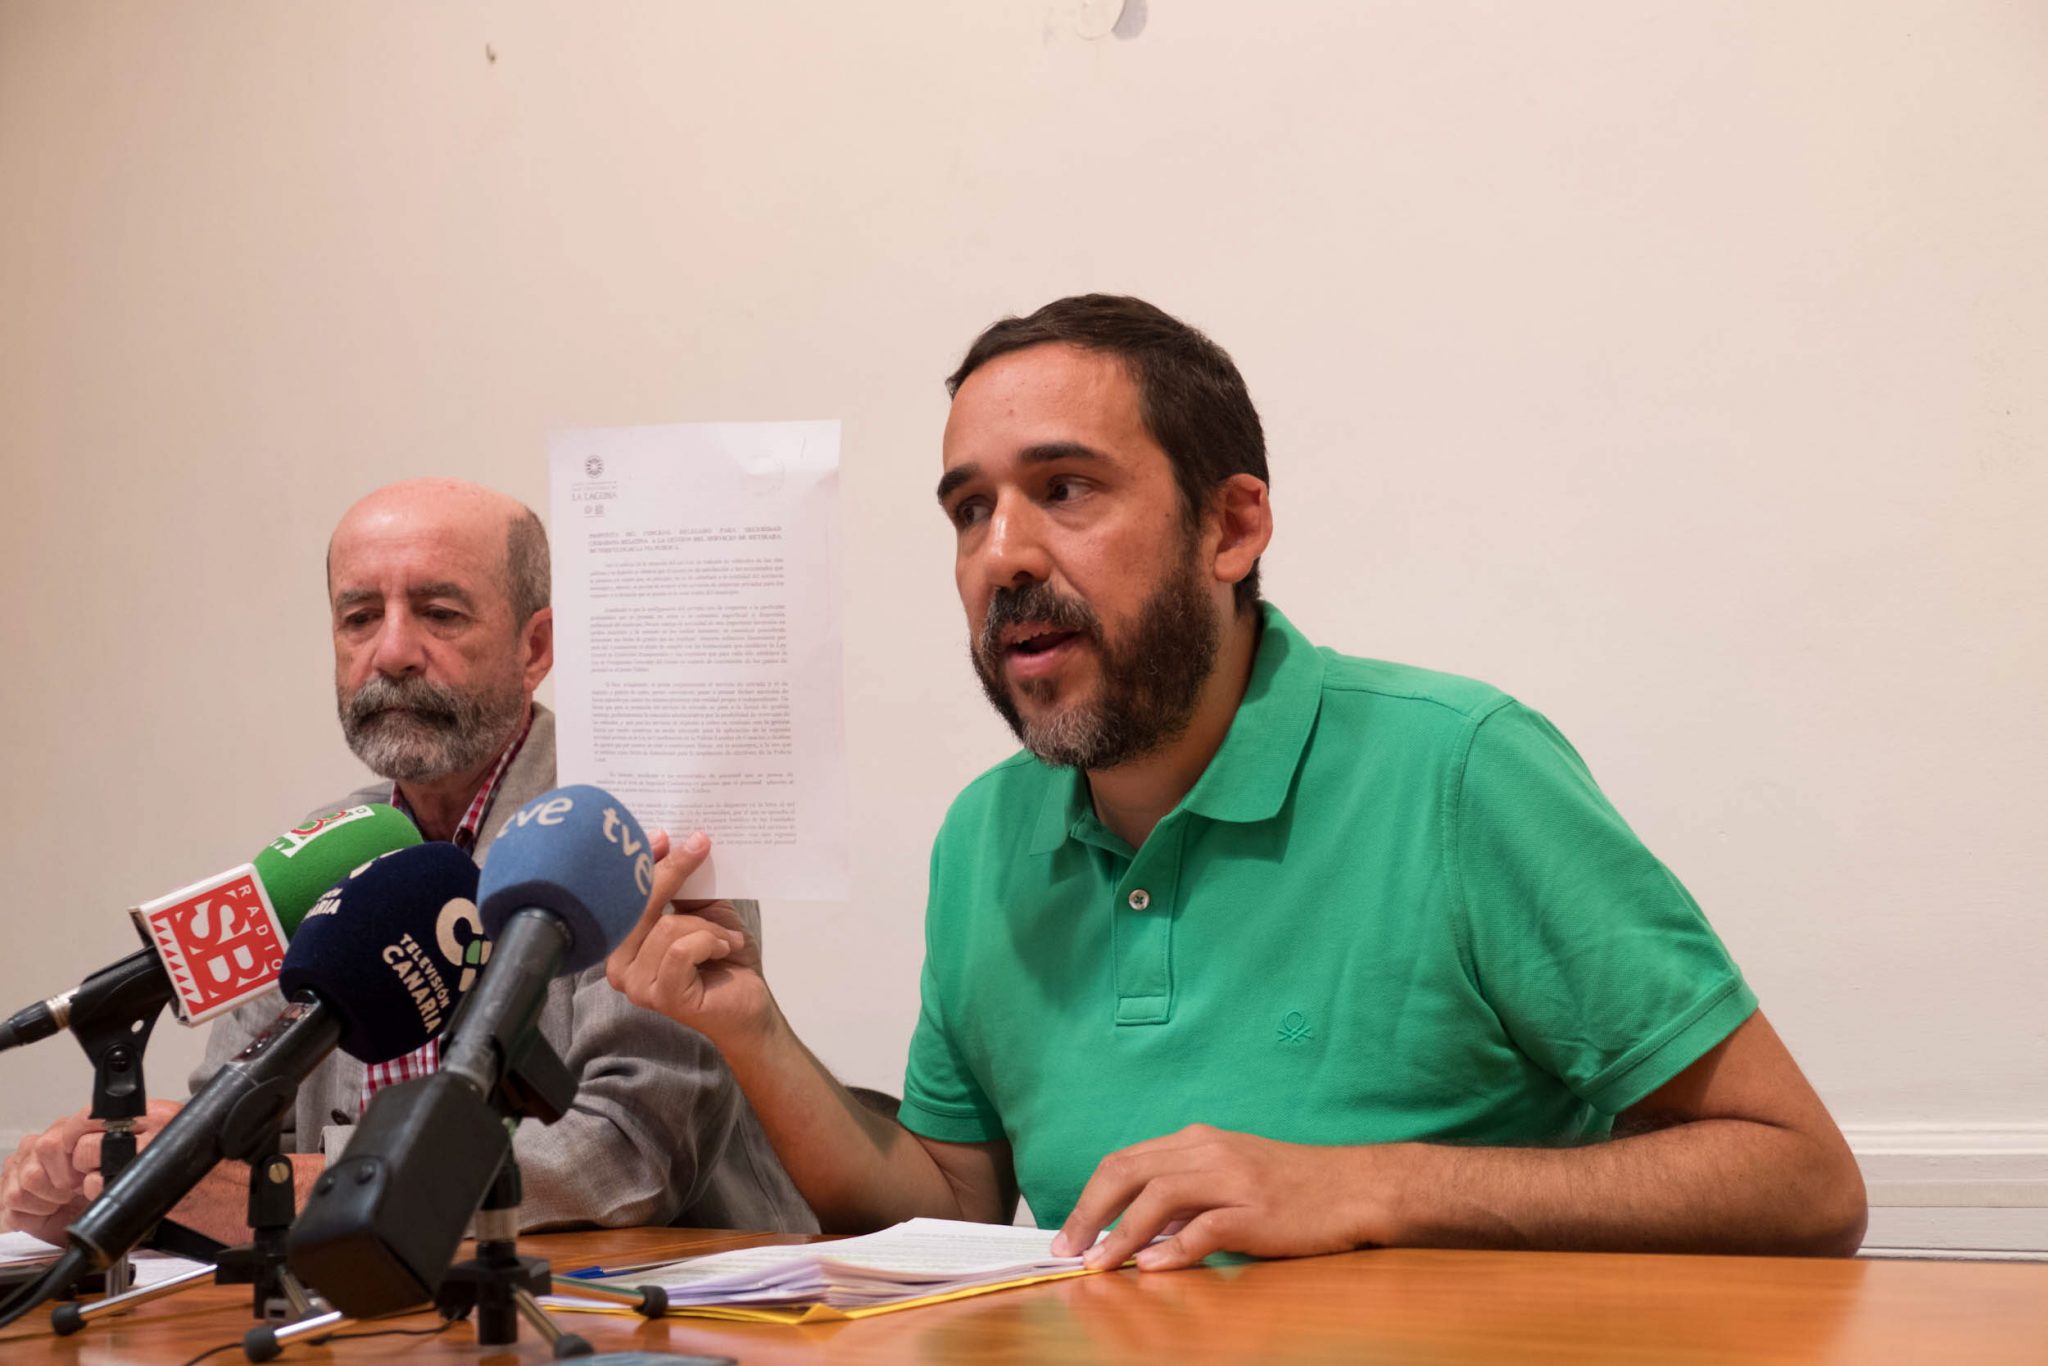 Santiago Pérez y RUbens Ascanio, durante la rueda prensa en La Laguna. / FRAN PALLERO